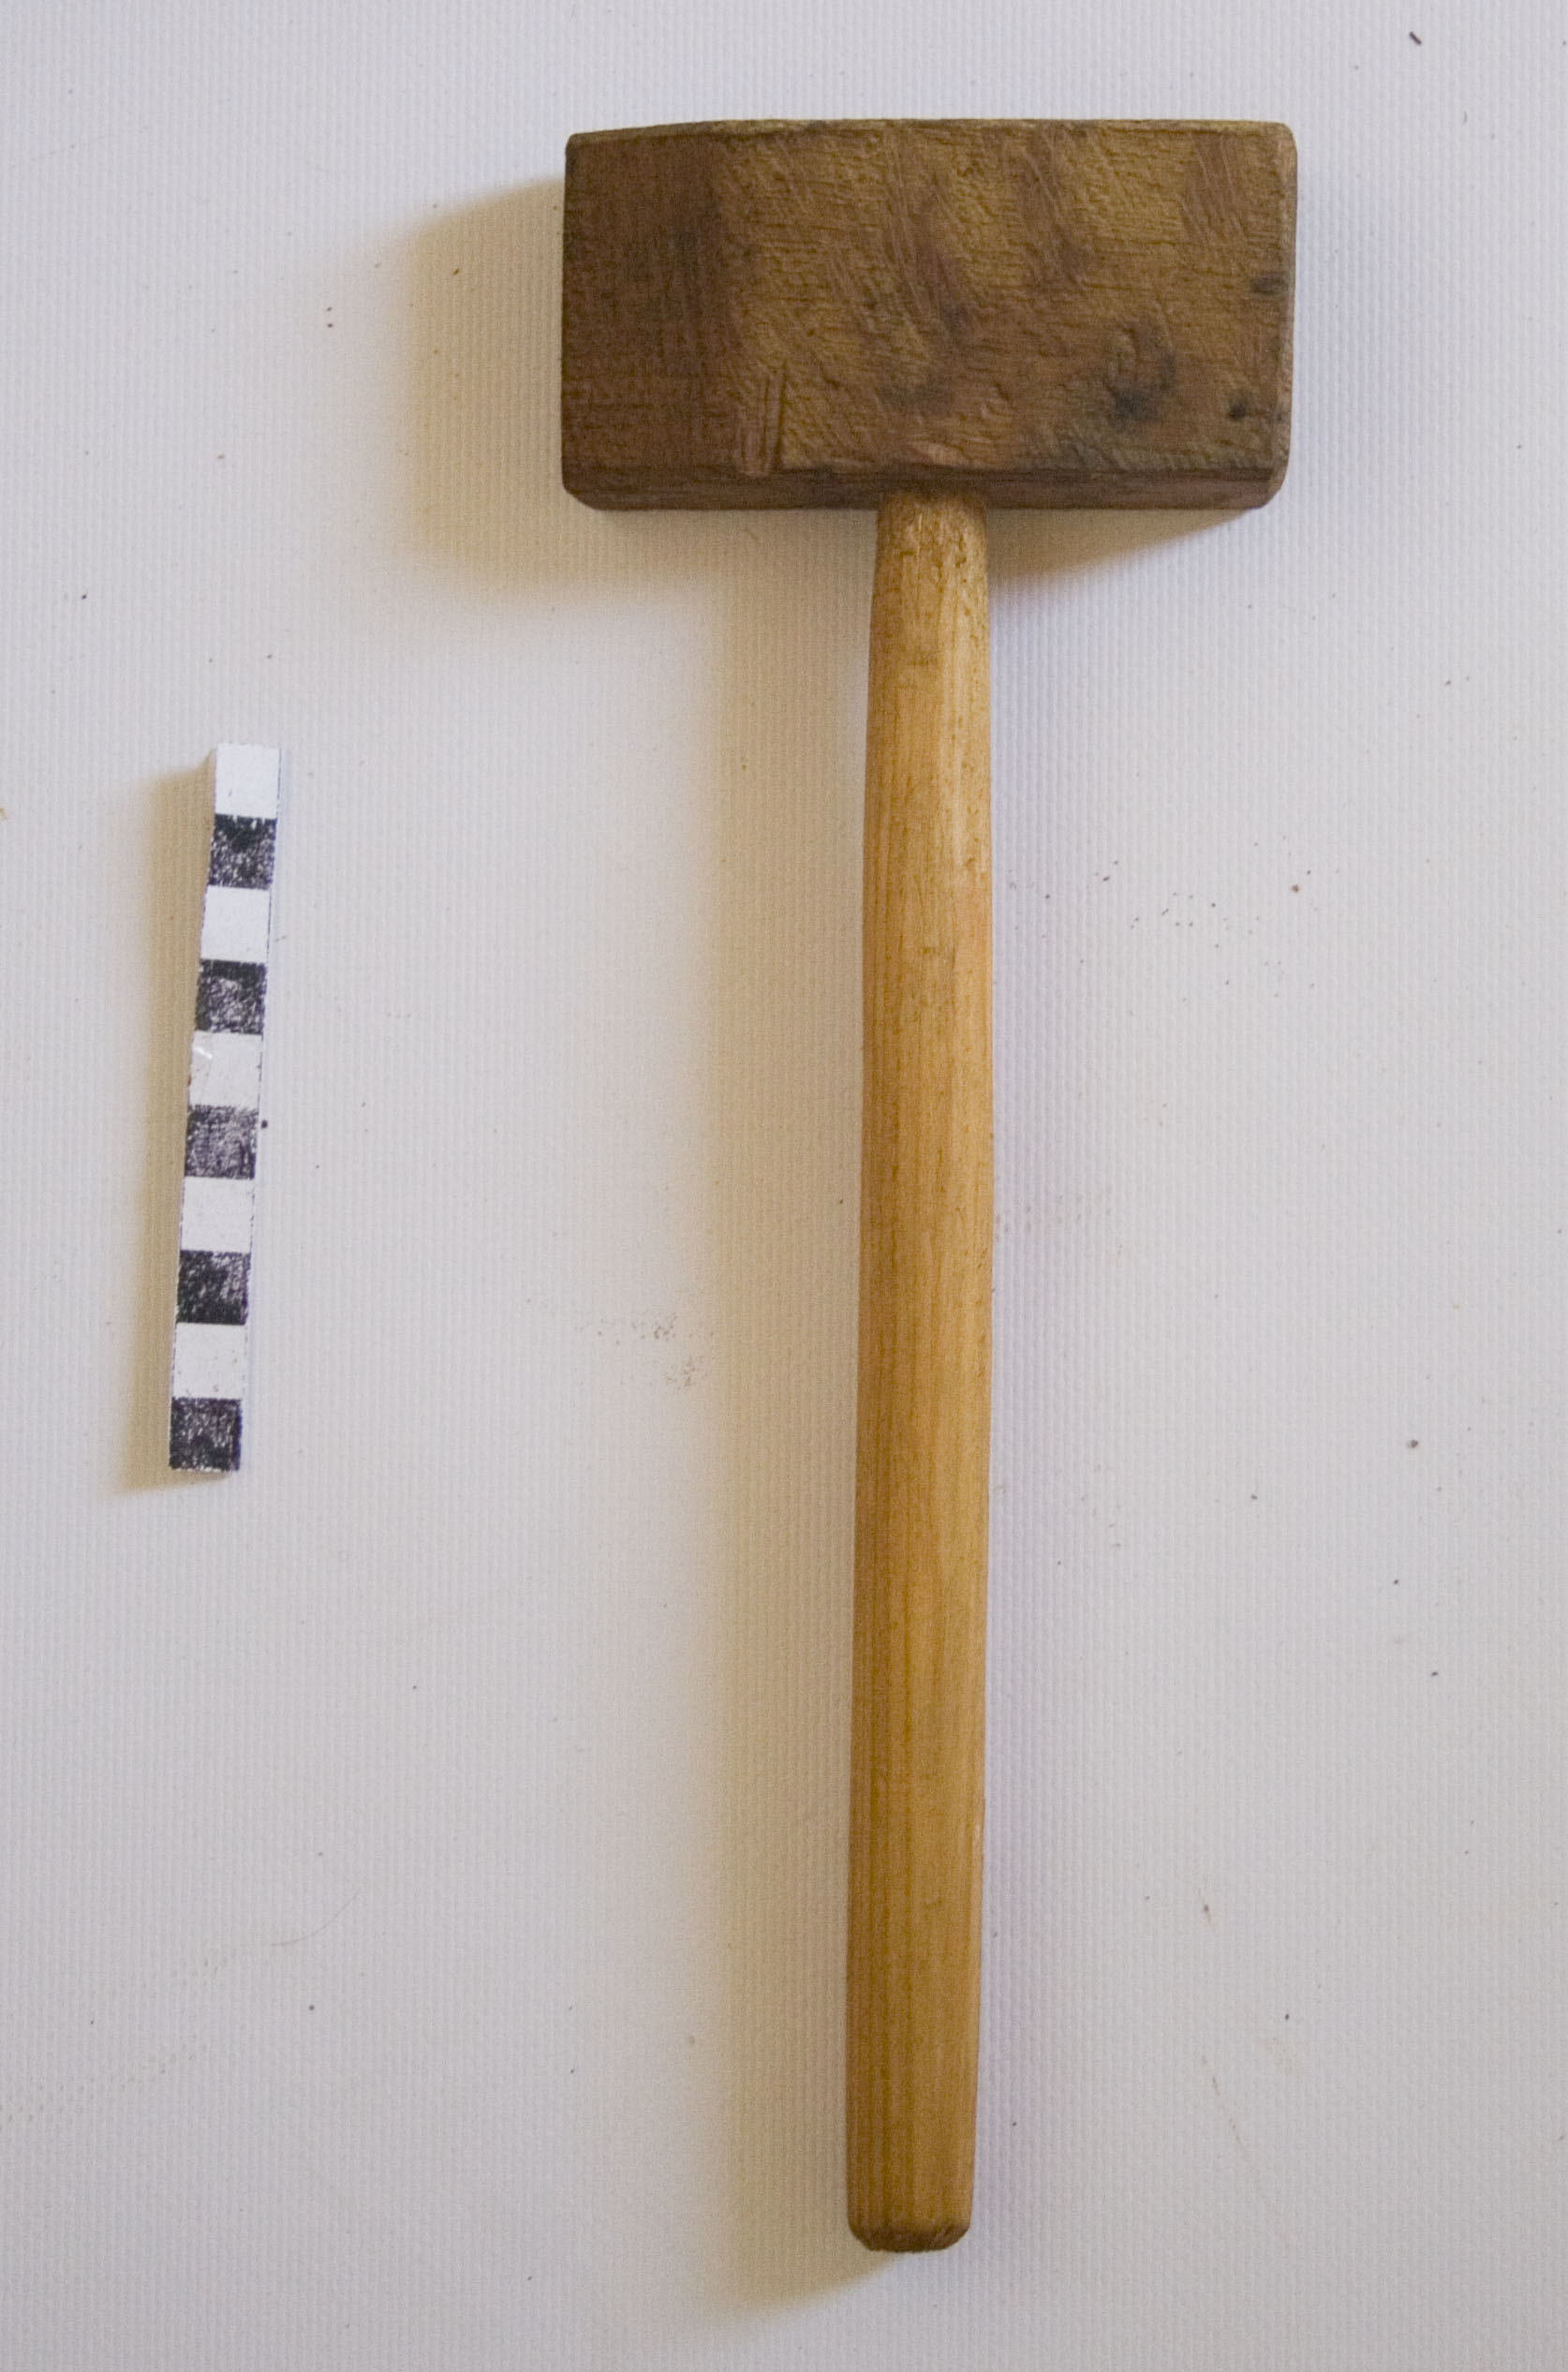 Martellino in legno, martelli, strumenti del falegname, bottaio